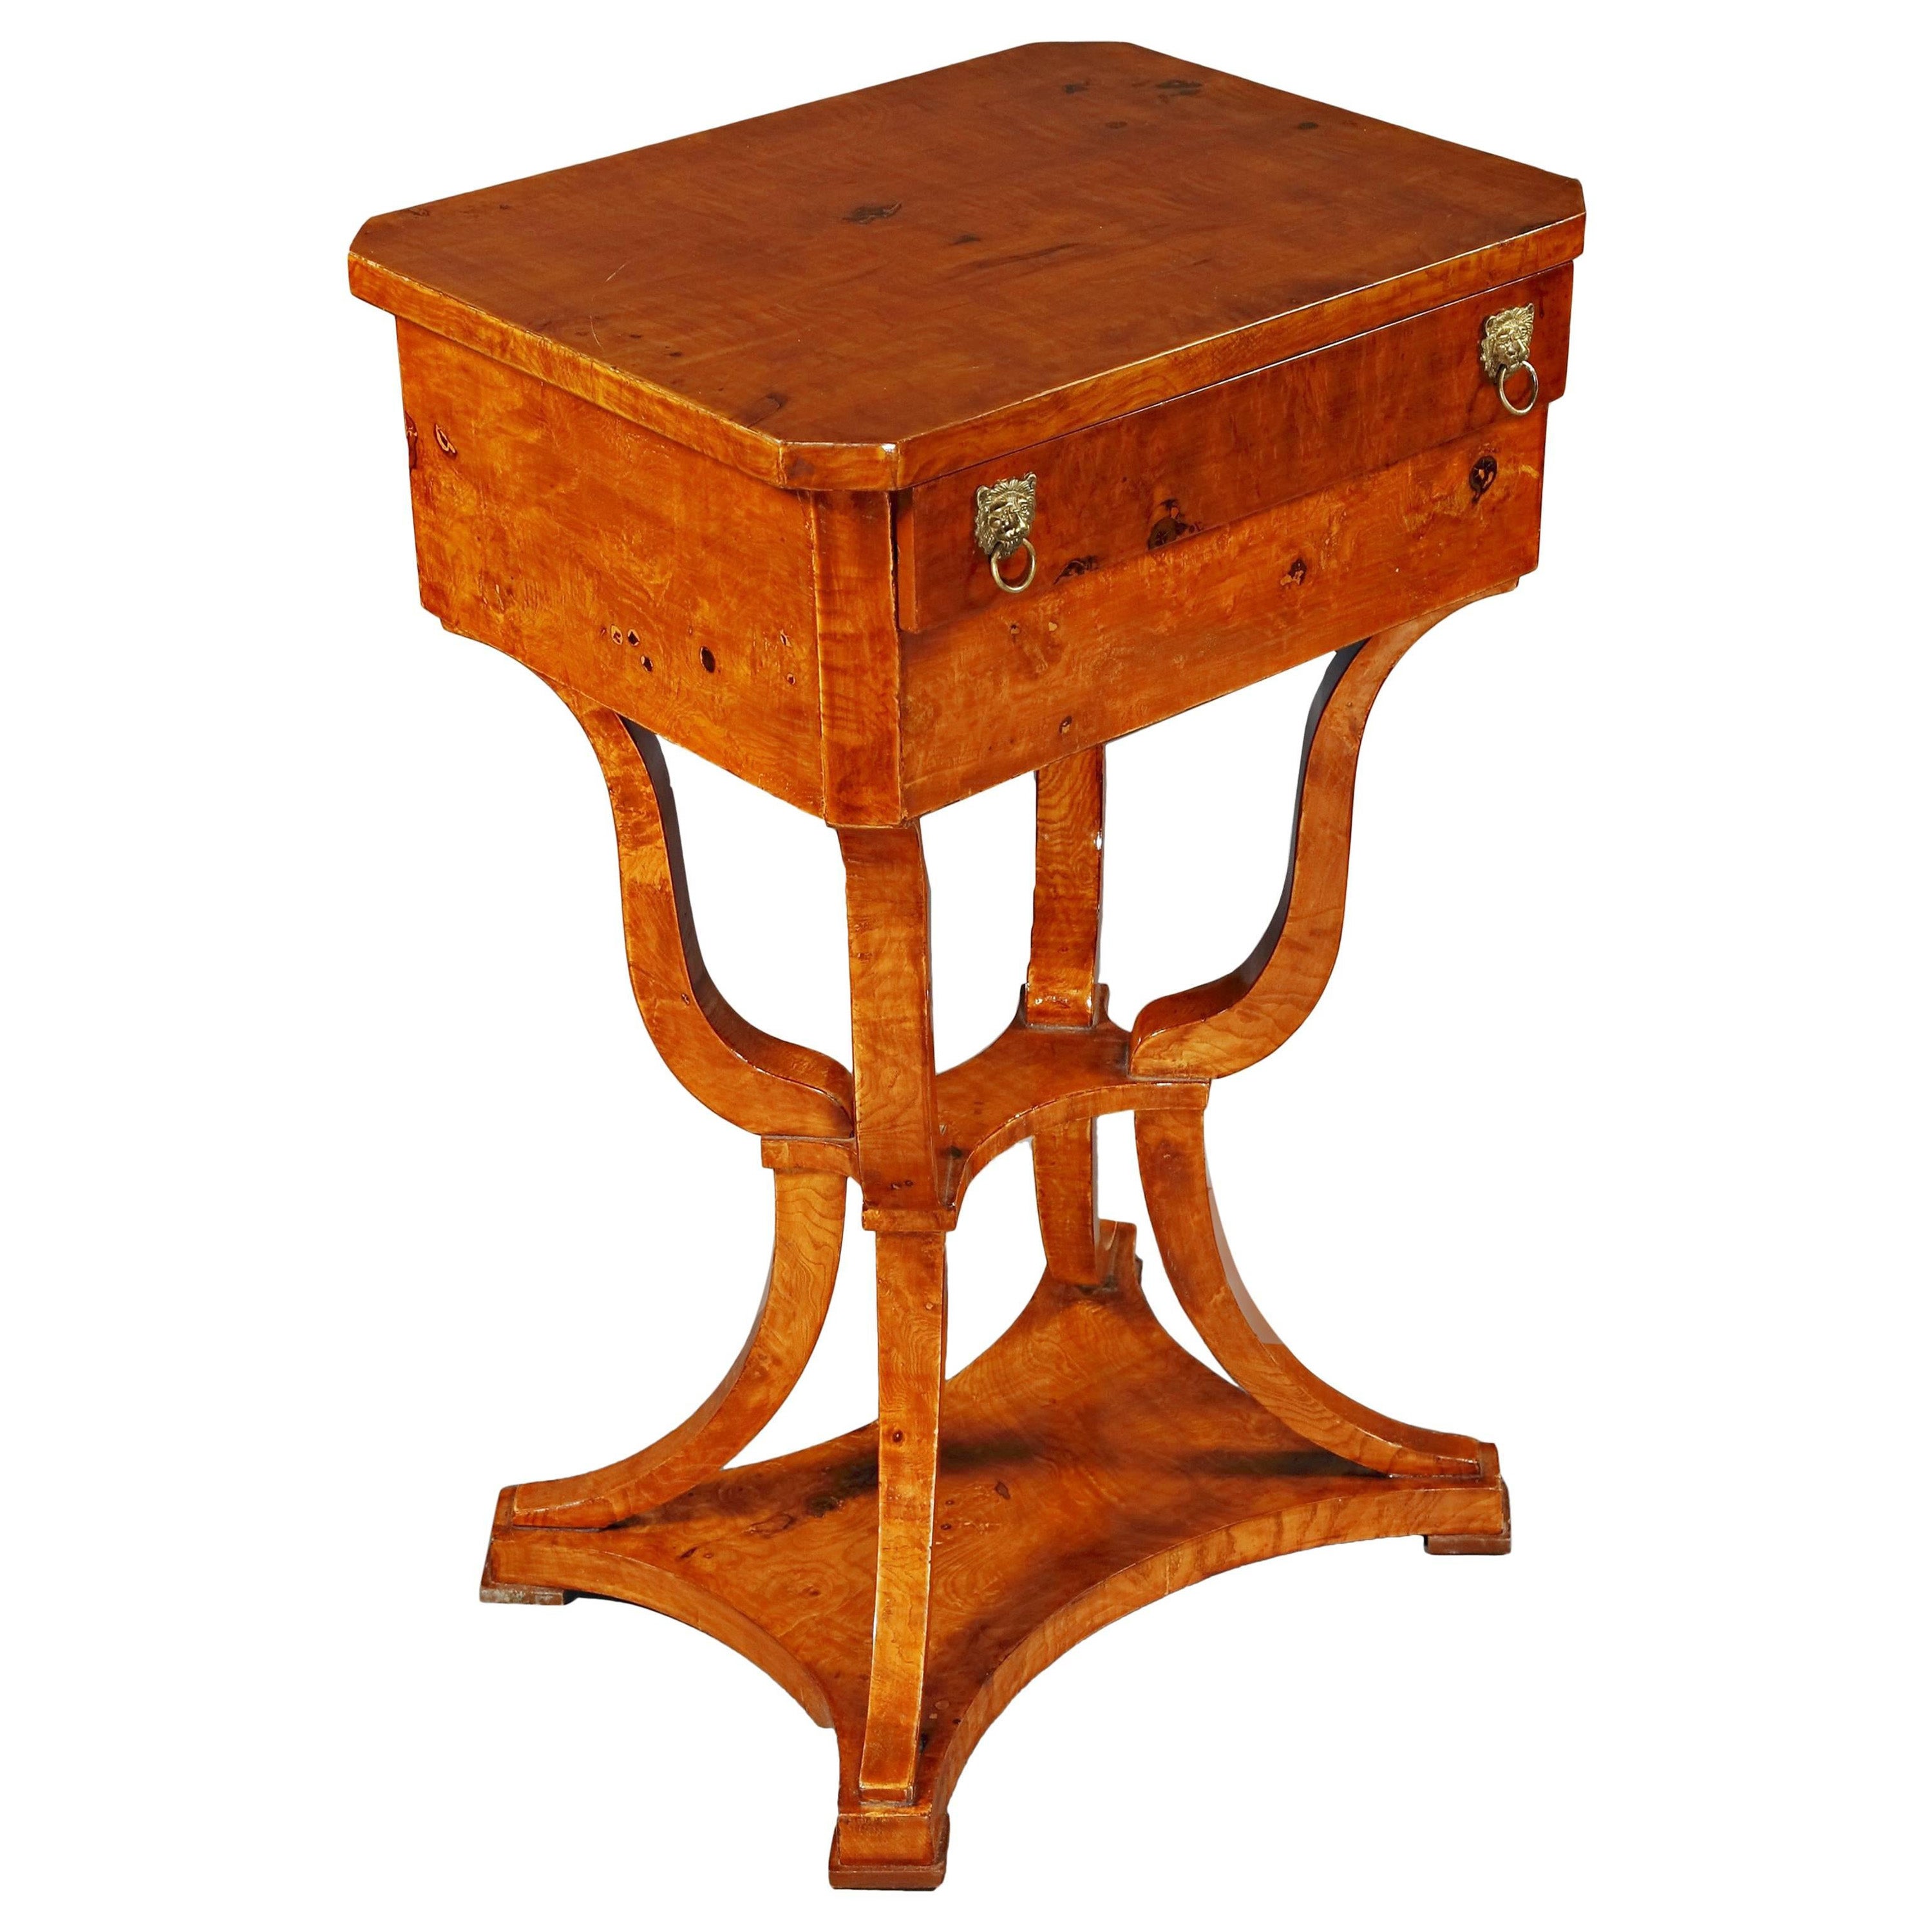 Elegant Sewing Table in antique Biedermeier Style maple veneer